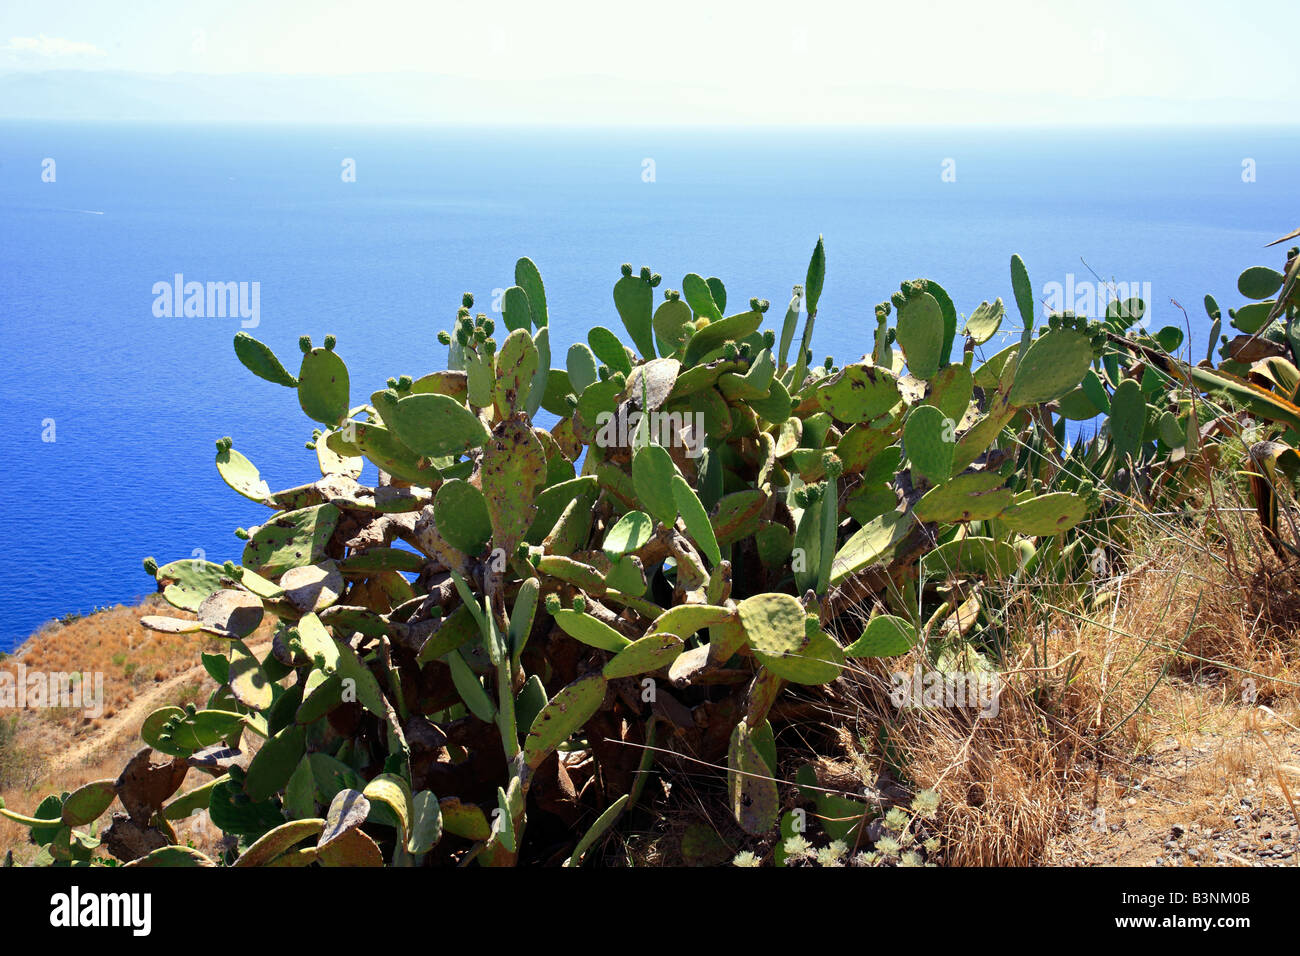 Natur, Pflanzen, Kakteen, Feigenkaktus, l' Opuntia ficus-indica Foto Stock